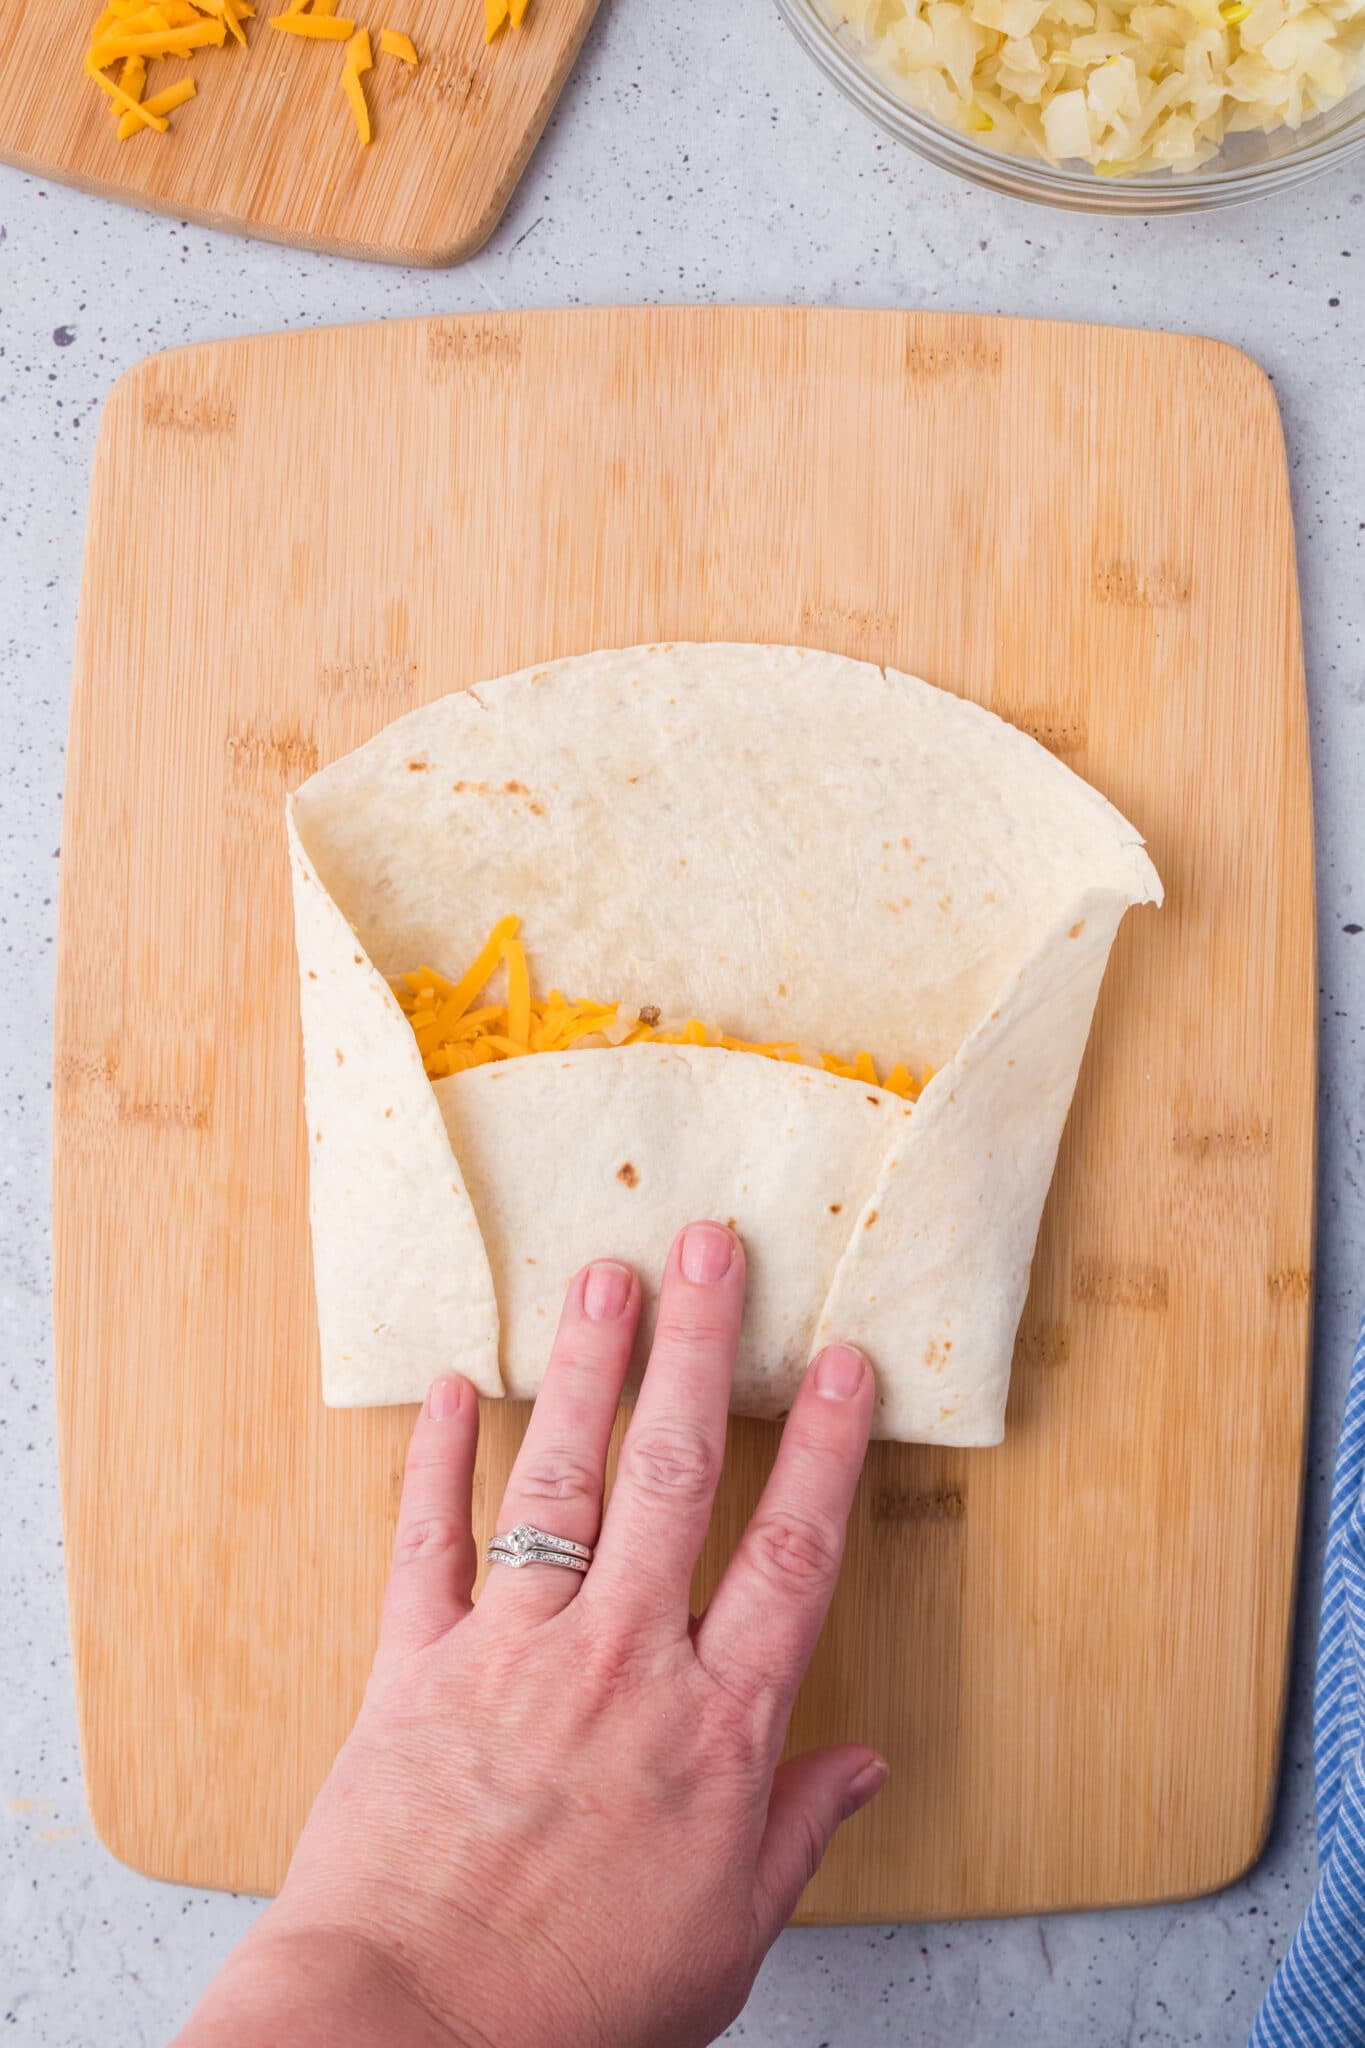 Folding the burrito.